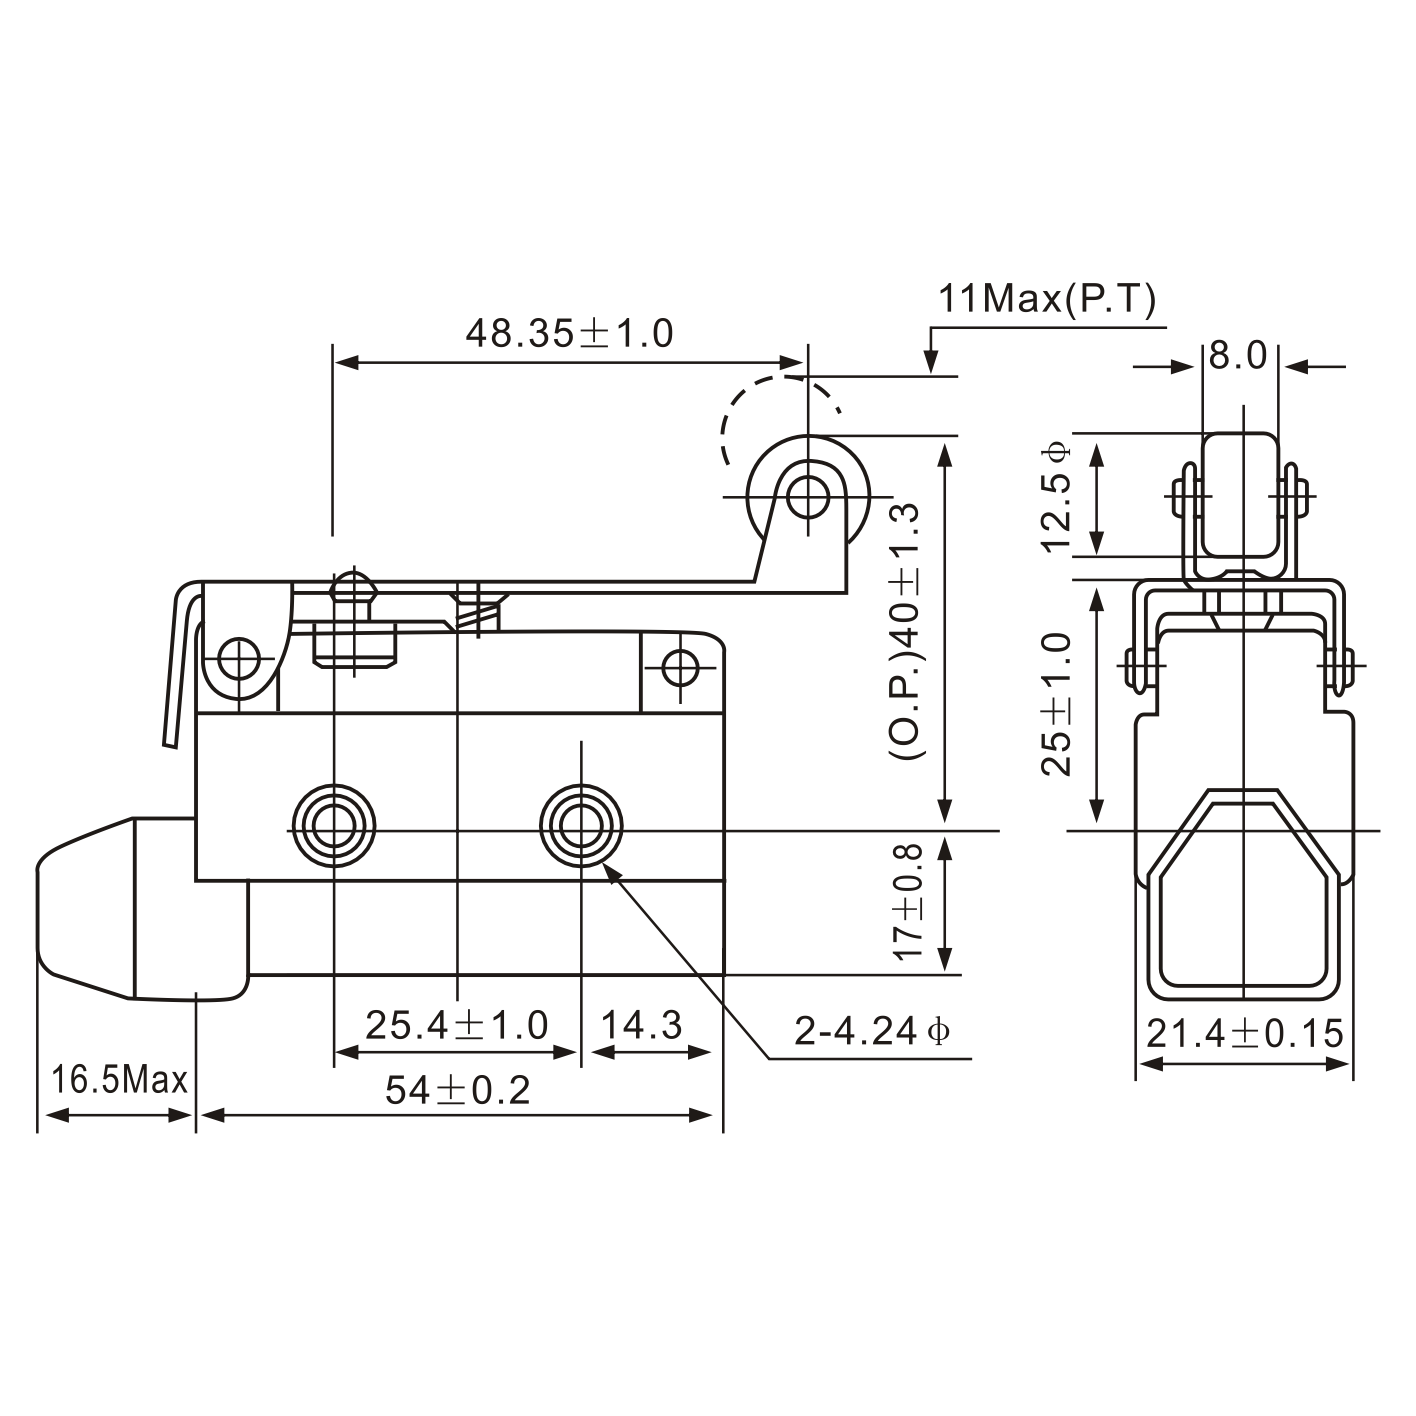 AZ-7121 Roller Lever Actuator Type Limit Switch Diagram